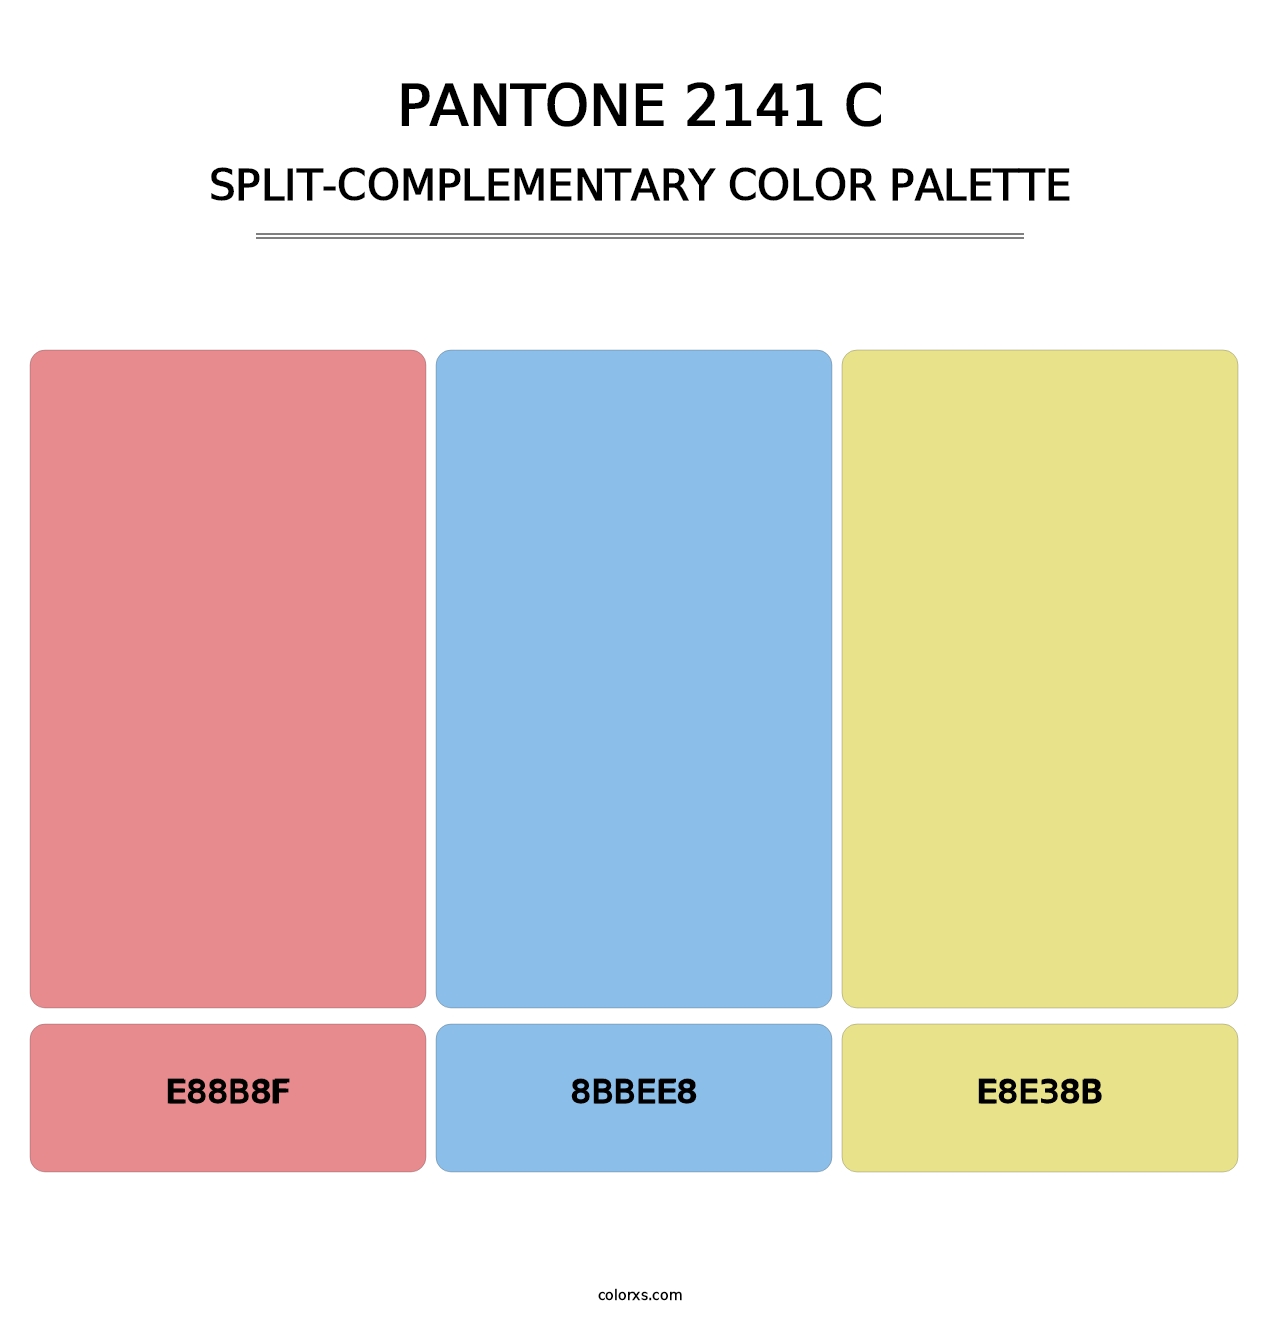 PANTONE 2141 C - Split-Complementary Color Palette